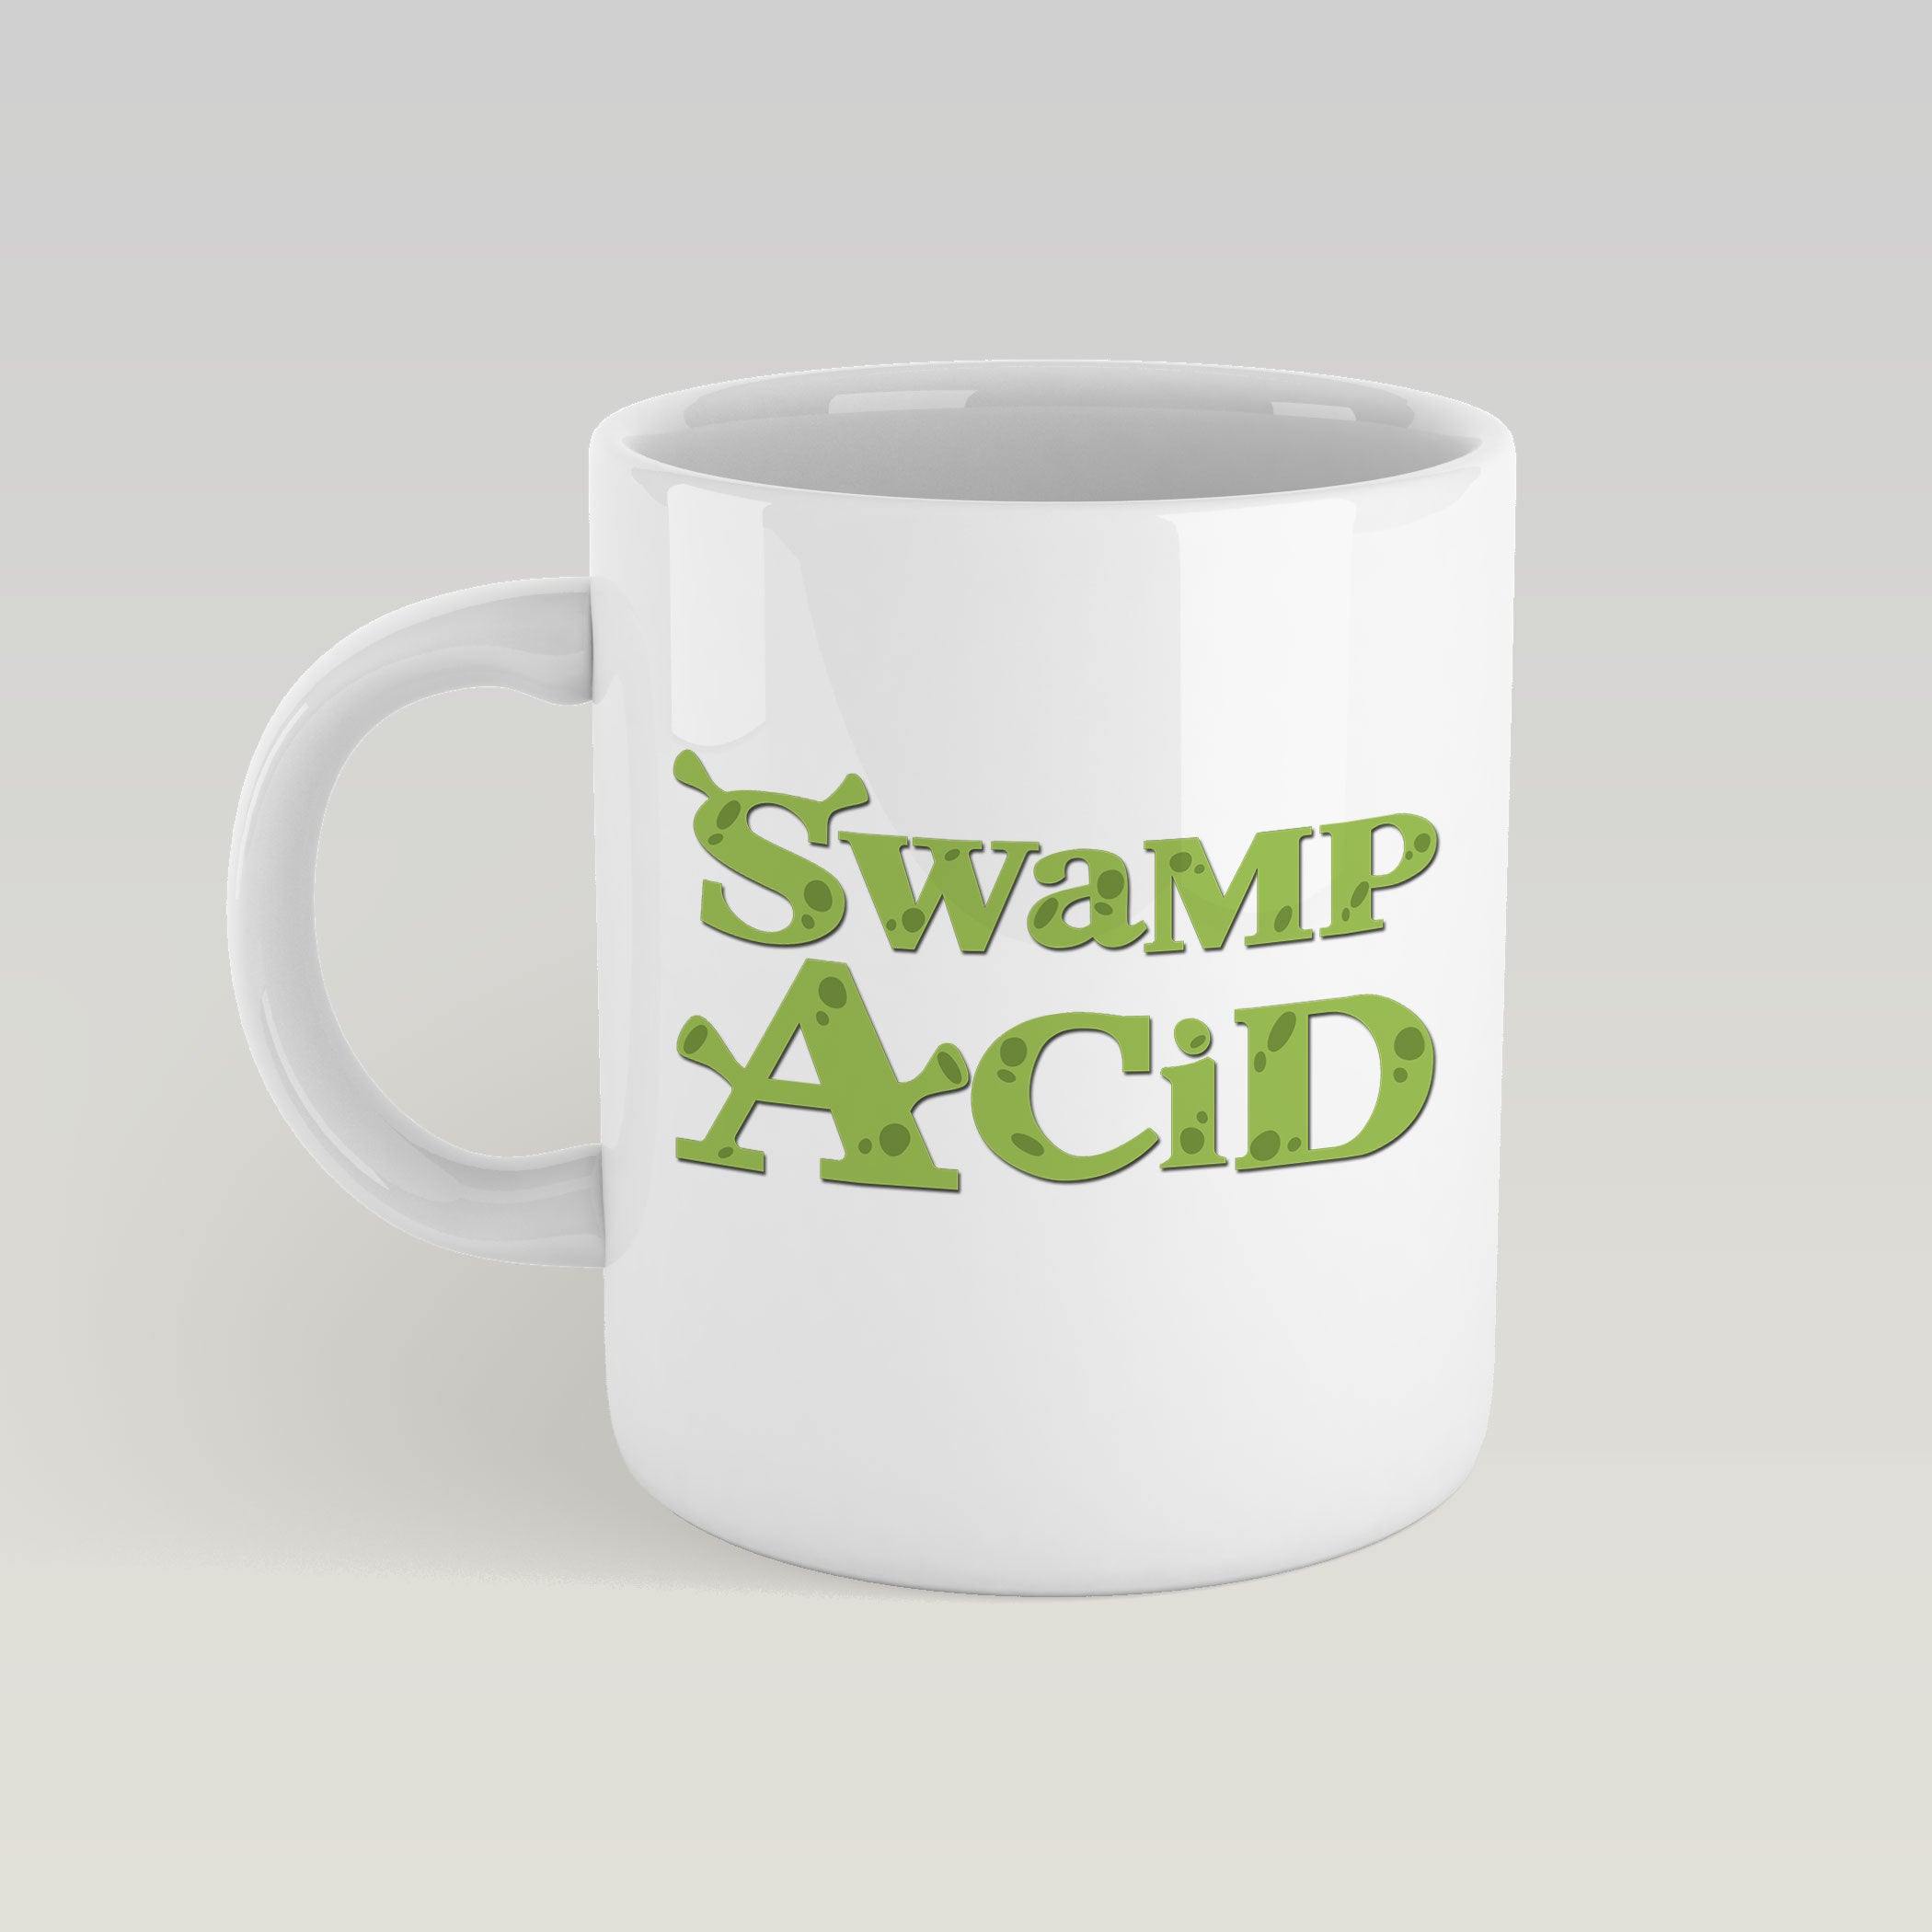 Brattery Acid -  Swamp Acid Mug